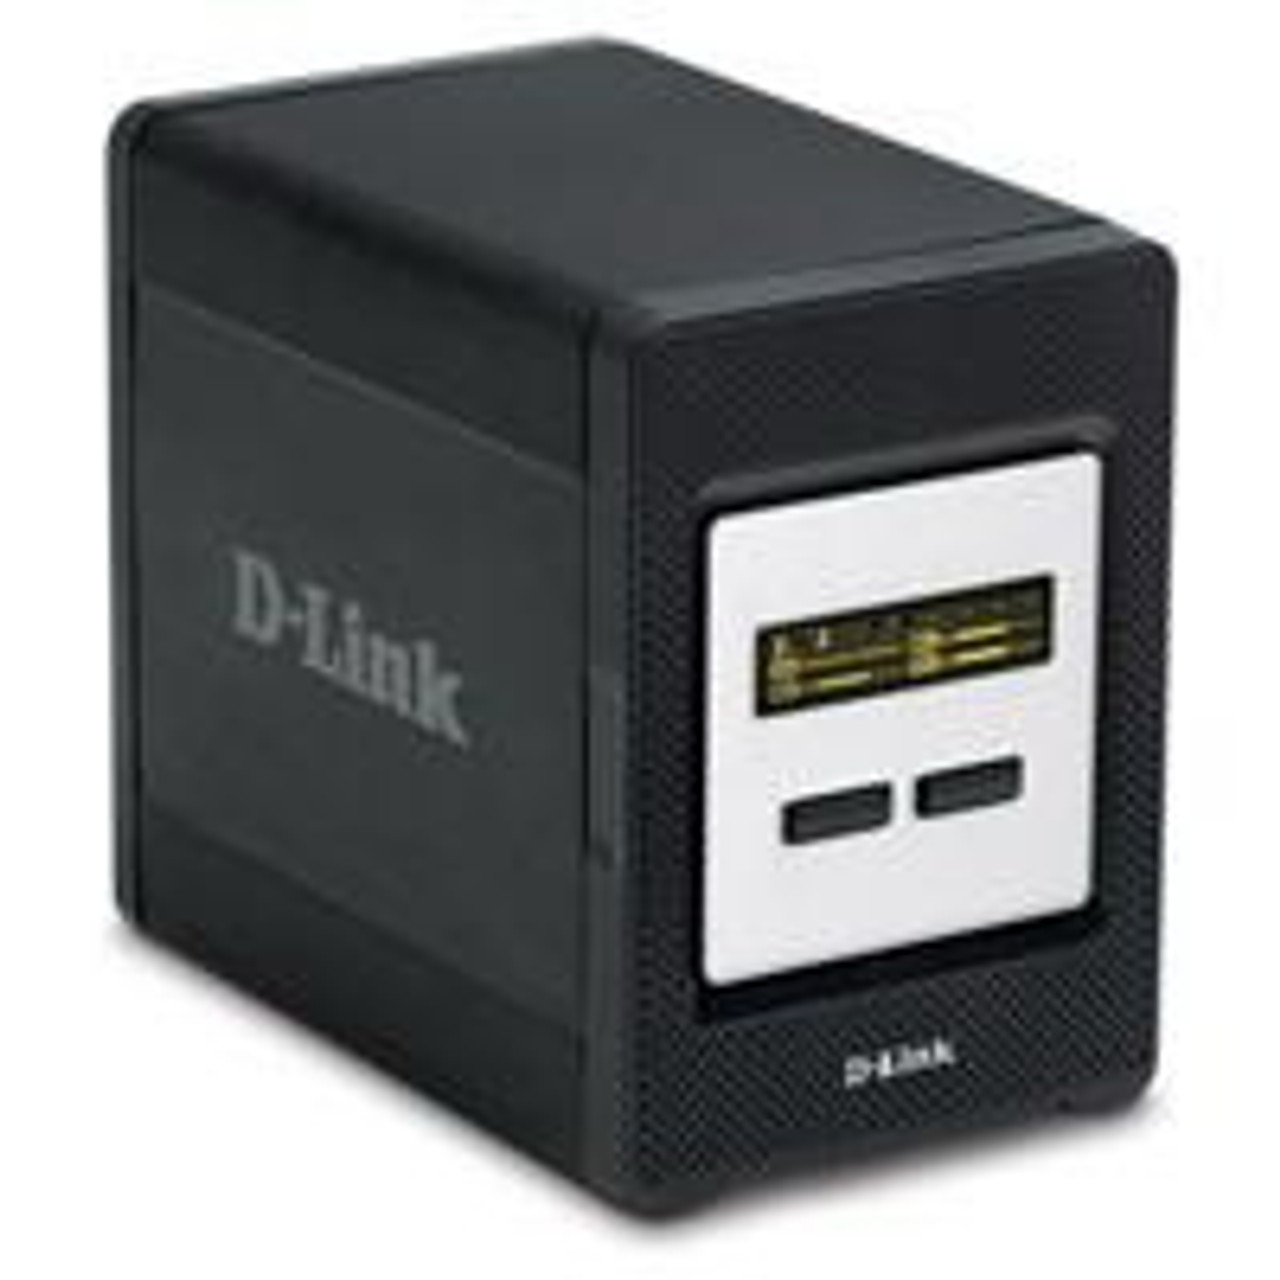 DNS-343-2TB D-Link 2TB 4-Bay Network Storage Sata Raid 0/1/5 Jbod USB (Refurbished)